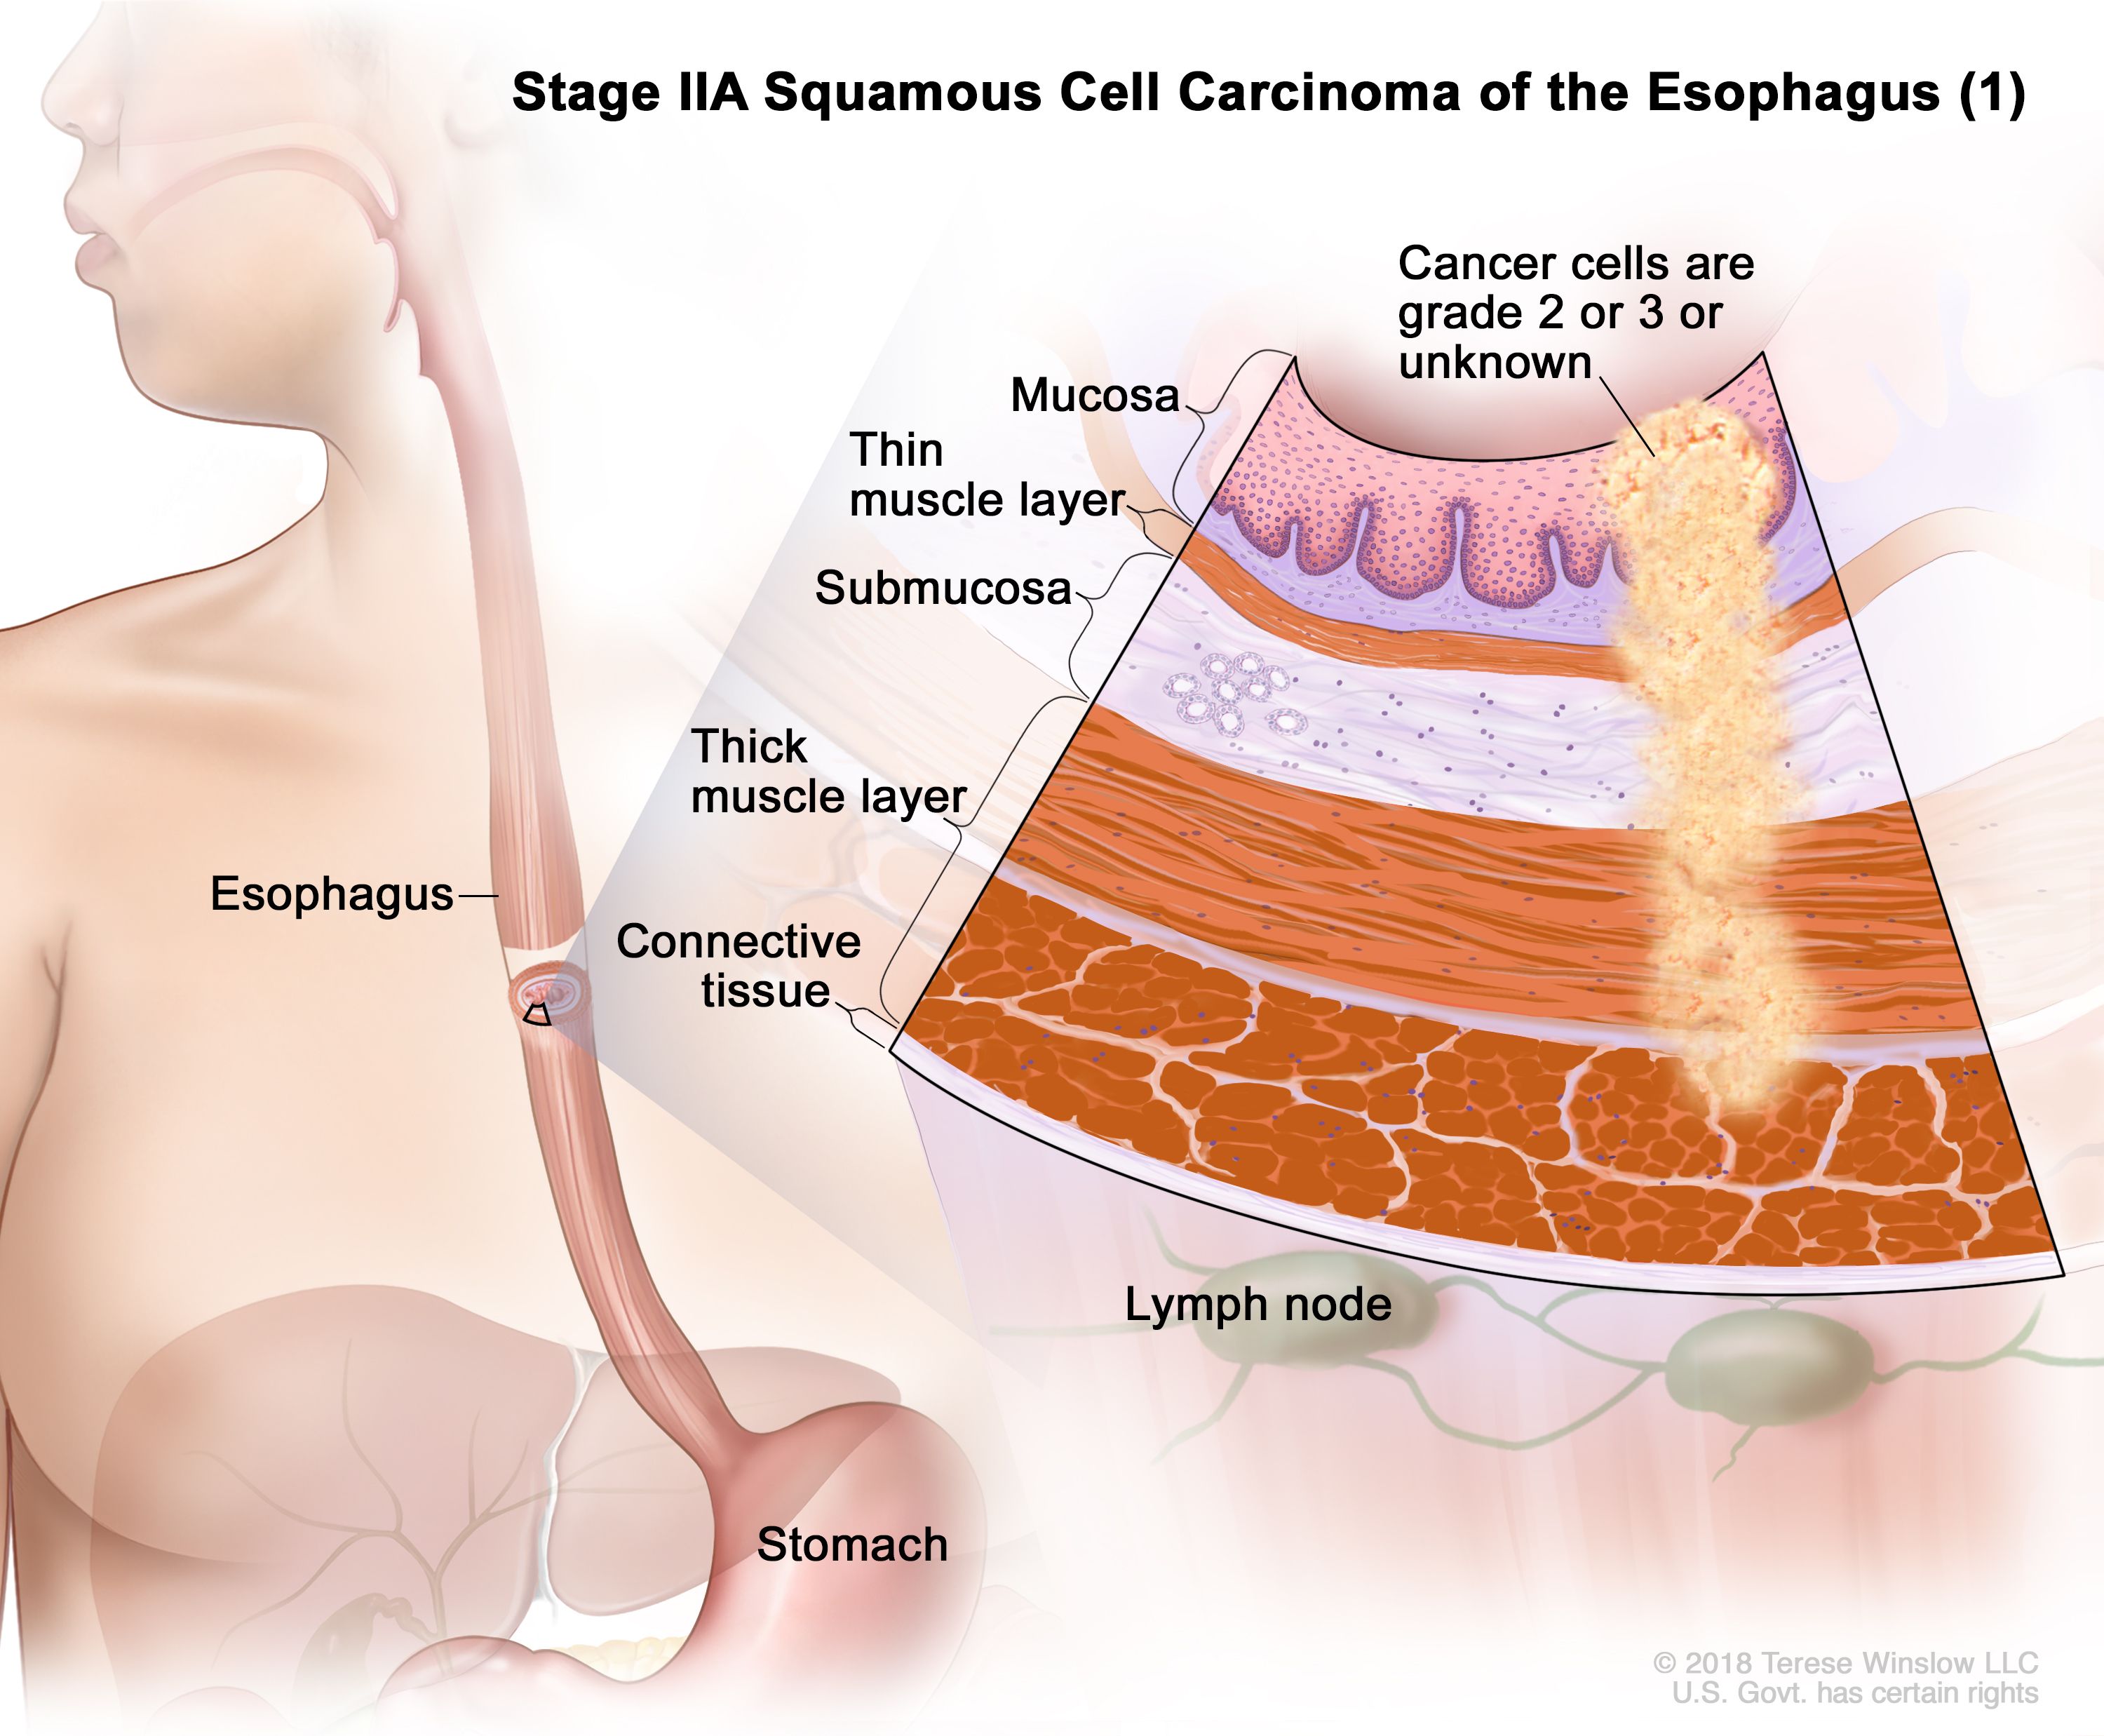 Karsinoma sel skuamosa tahap IIA esofagus 